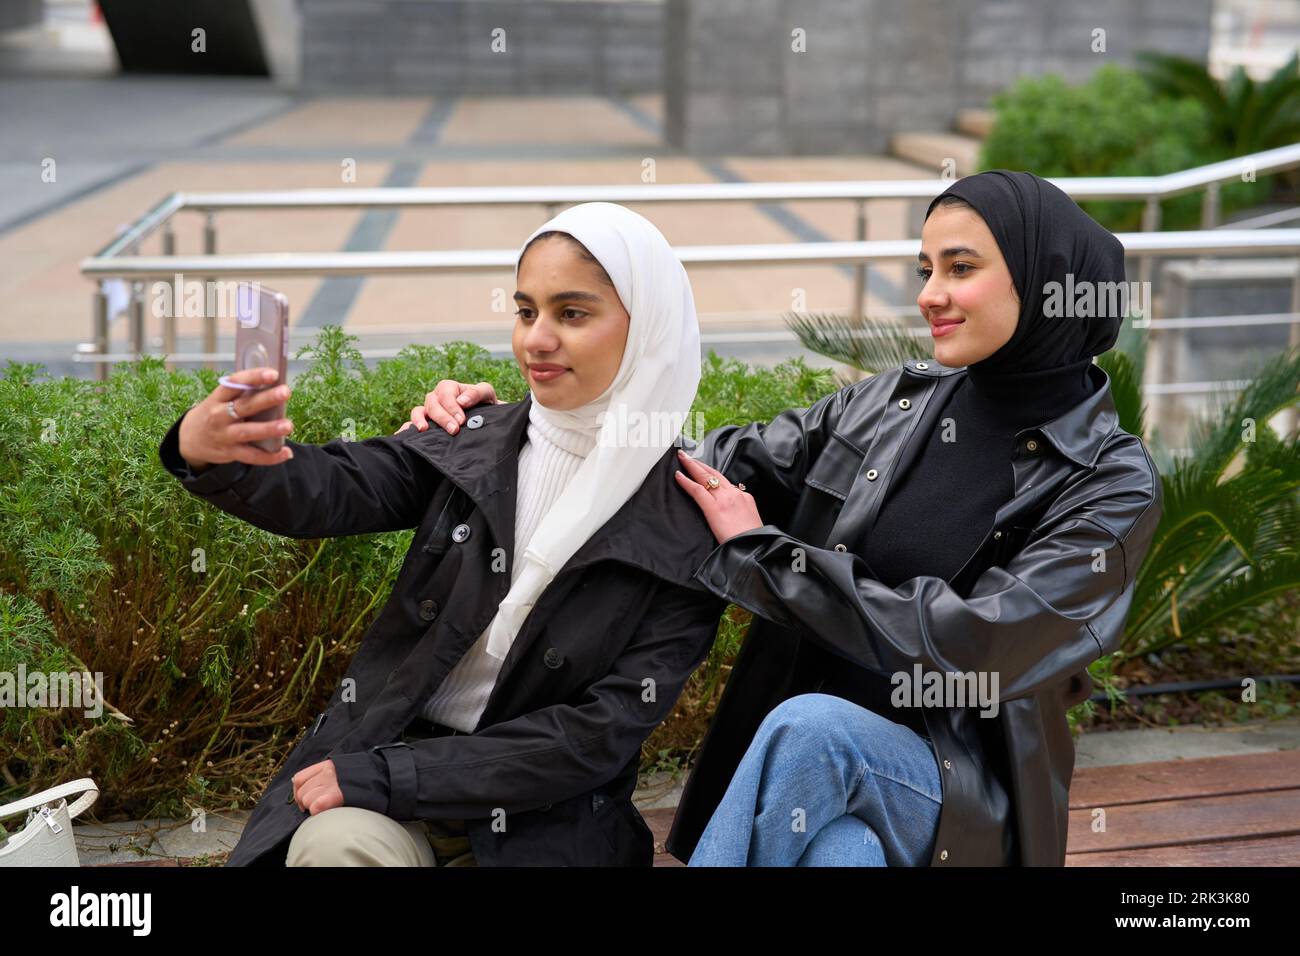 Junge muslimische Frauen mit Hijabs, die Selfie machen Stockfoto